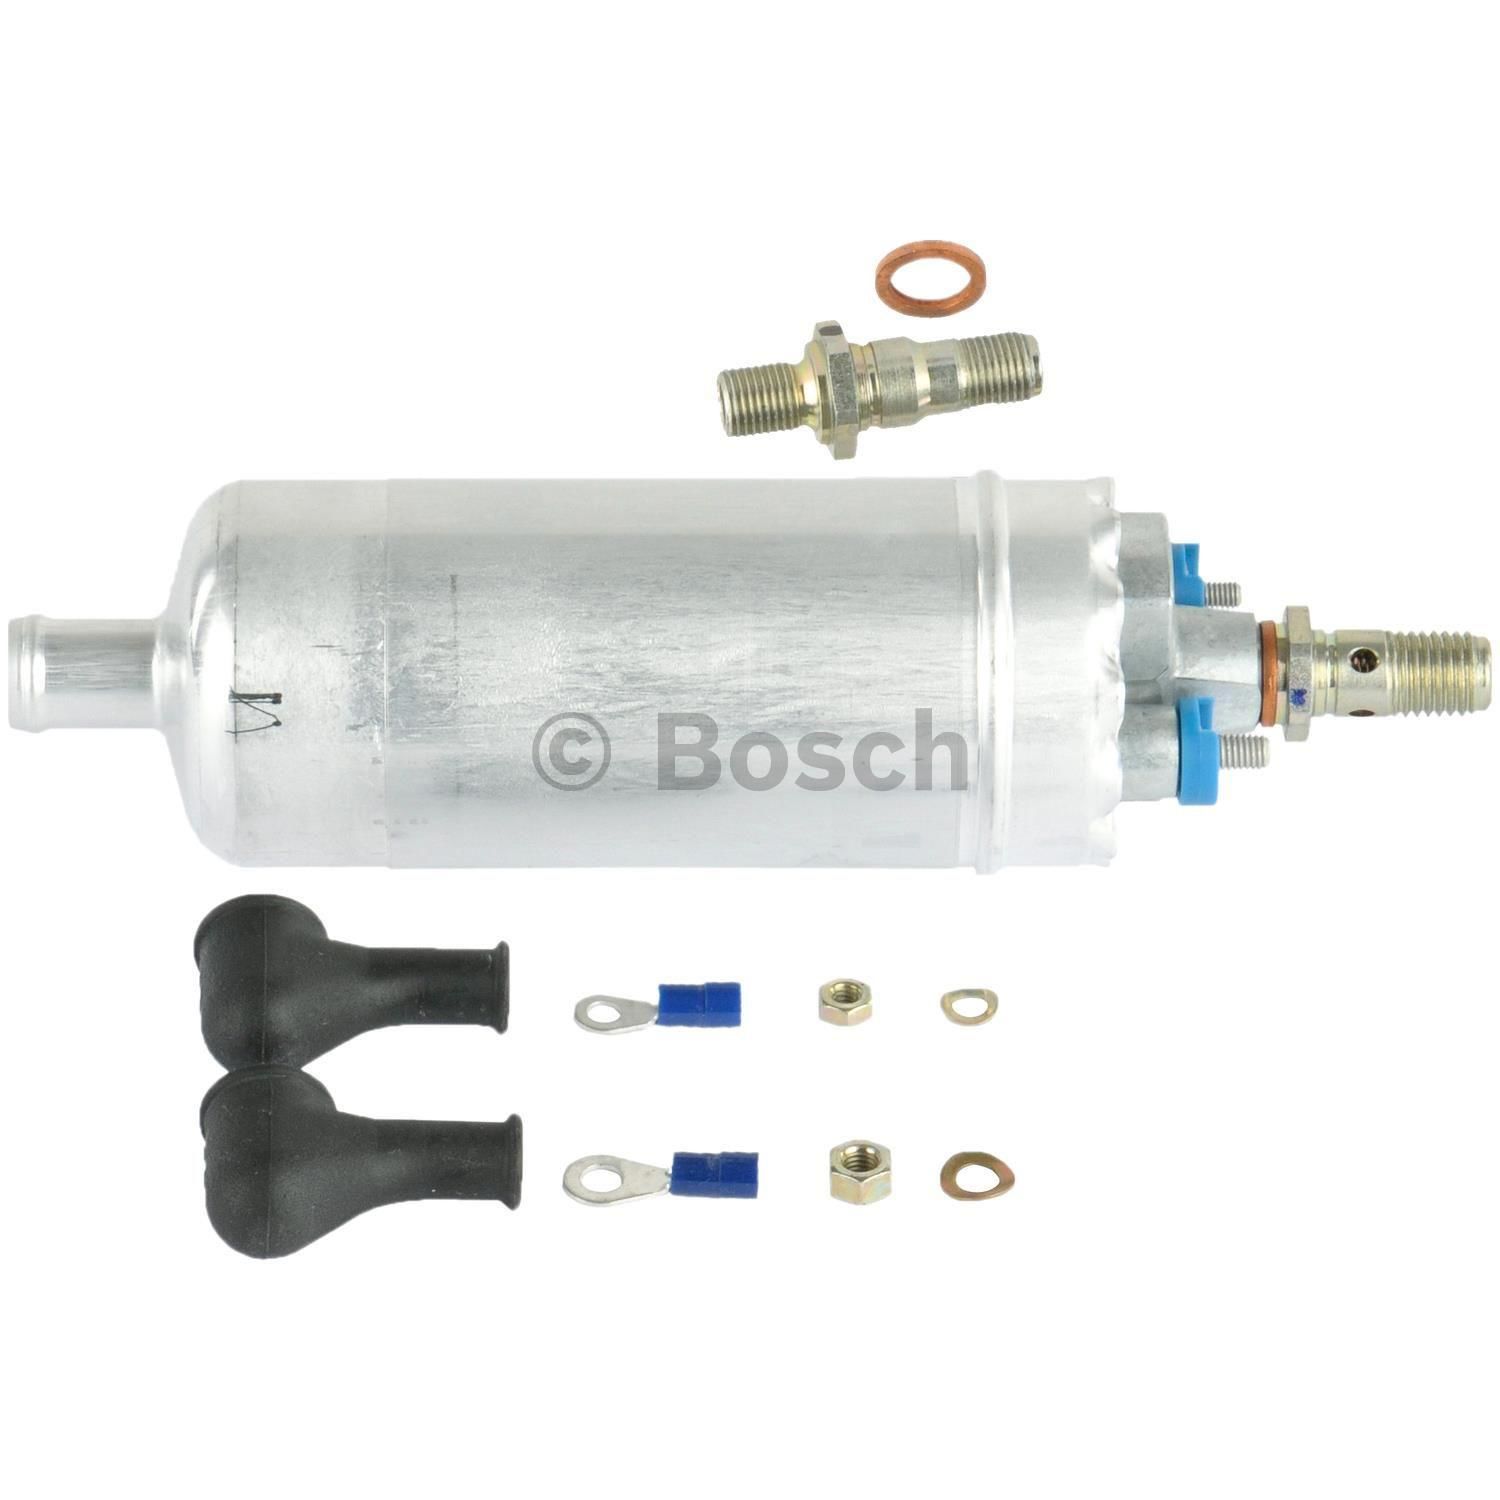 Fuel Pumps - Fuel Pumps - Bosch Auto Parts